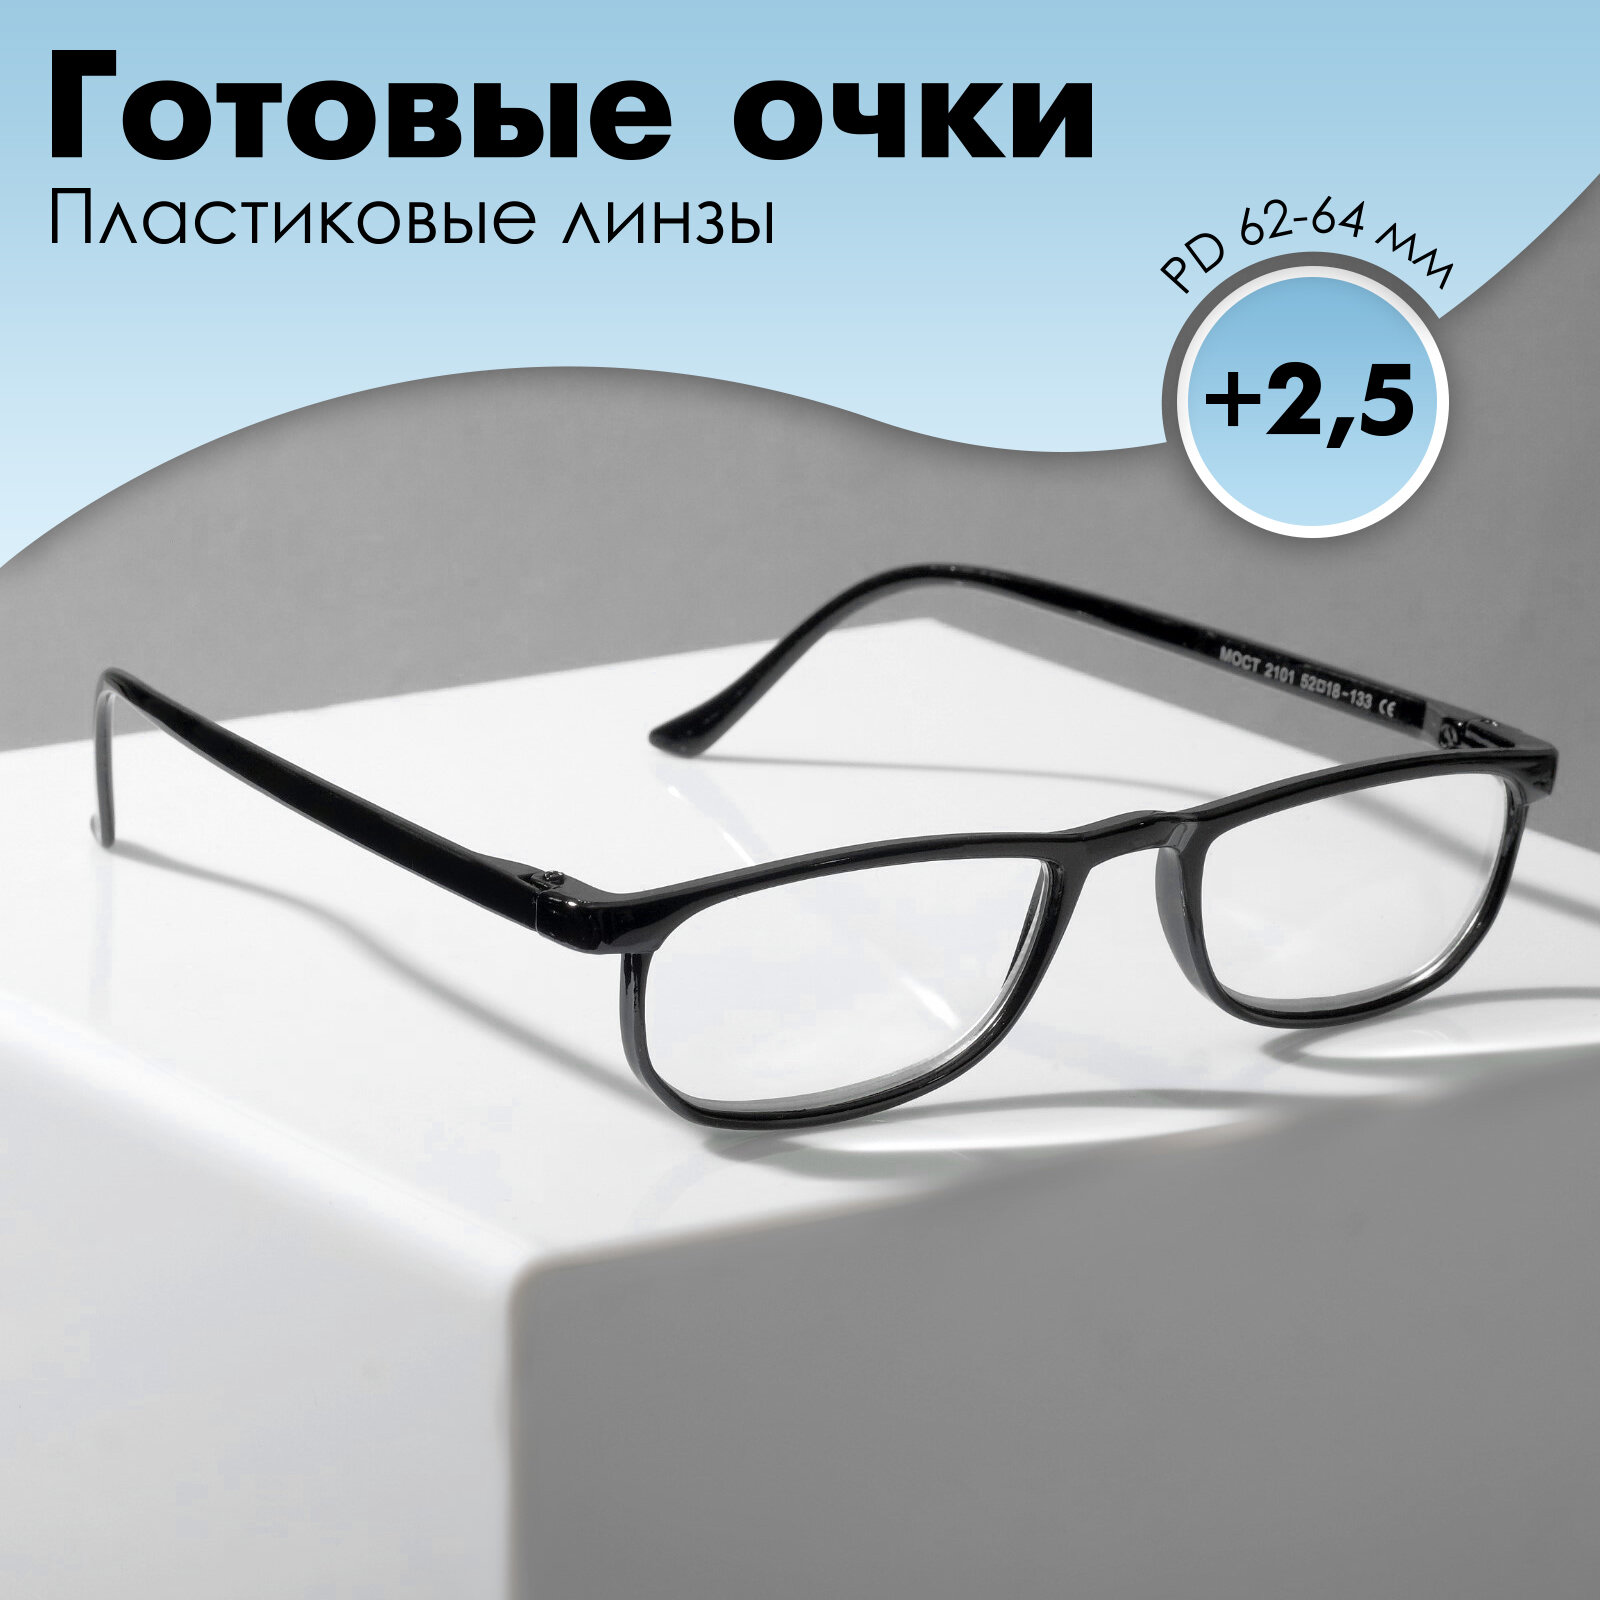 Готовые очки Most 2101 цвет чёрный (+2.50)